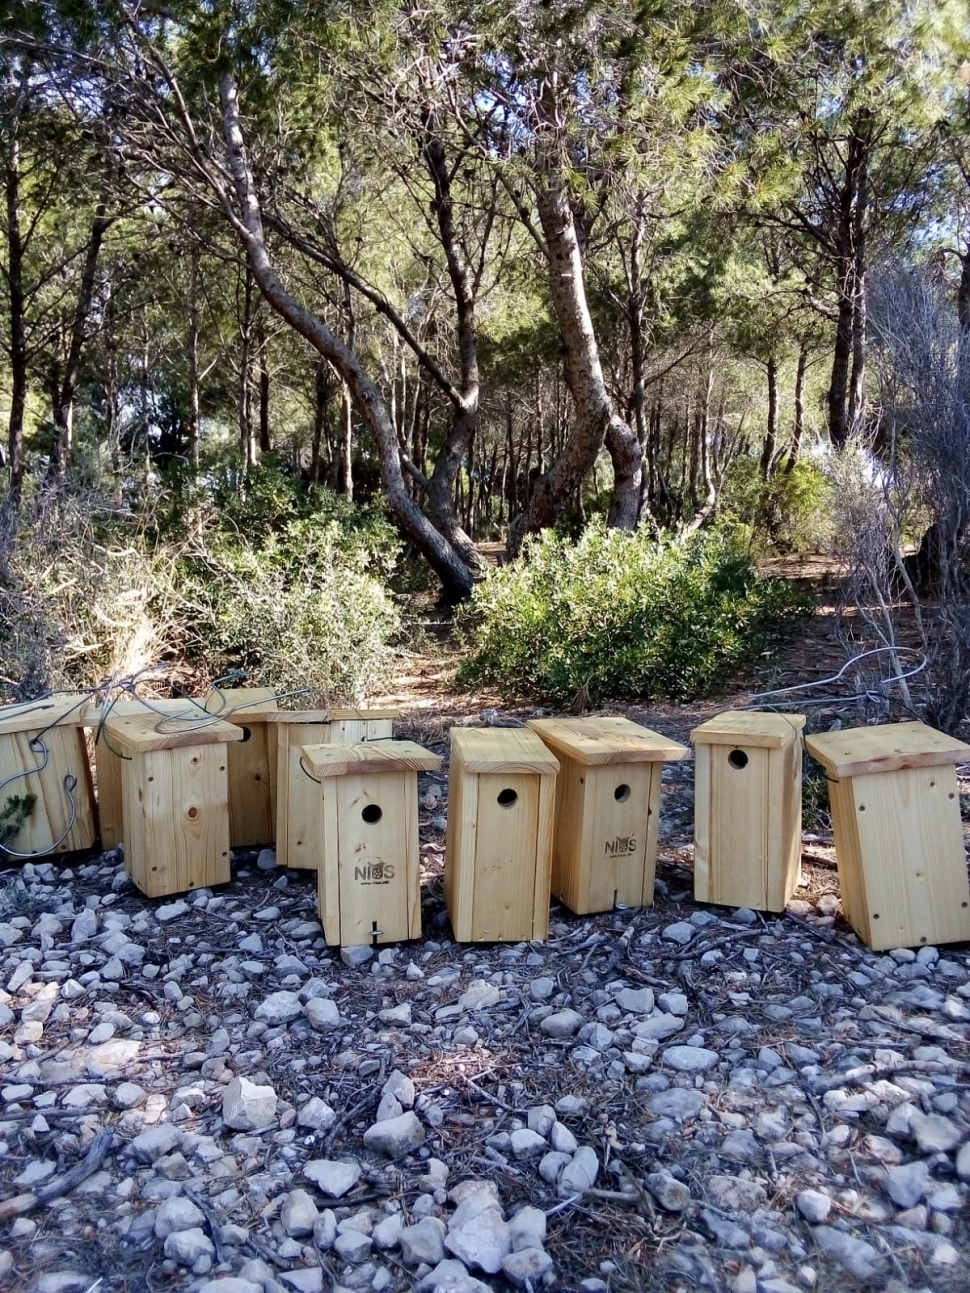 El Port de Tarragona instal·la 10 caixes nius per millorar el control biològic i proporcionar refugi a les aus